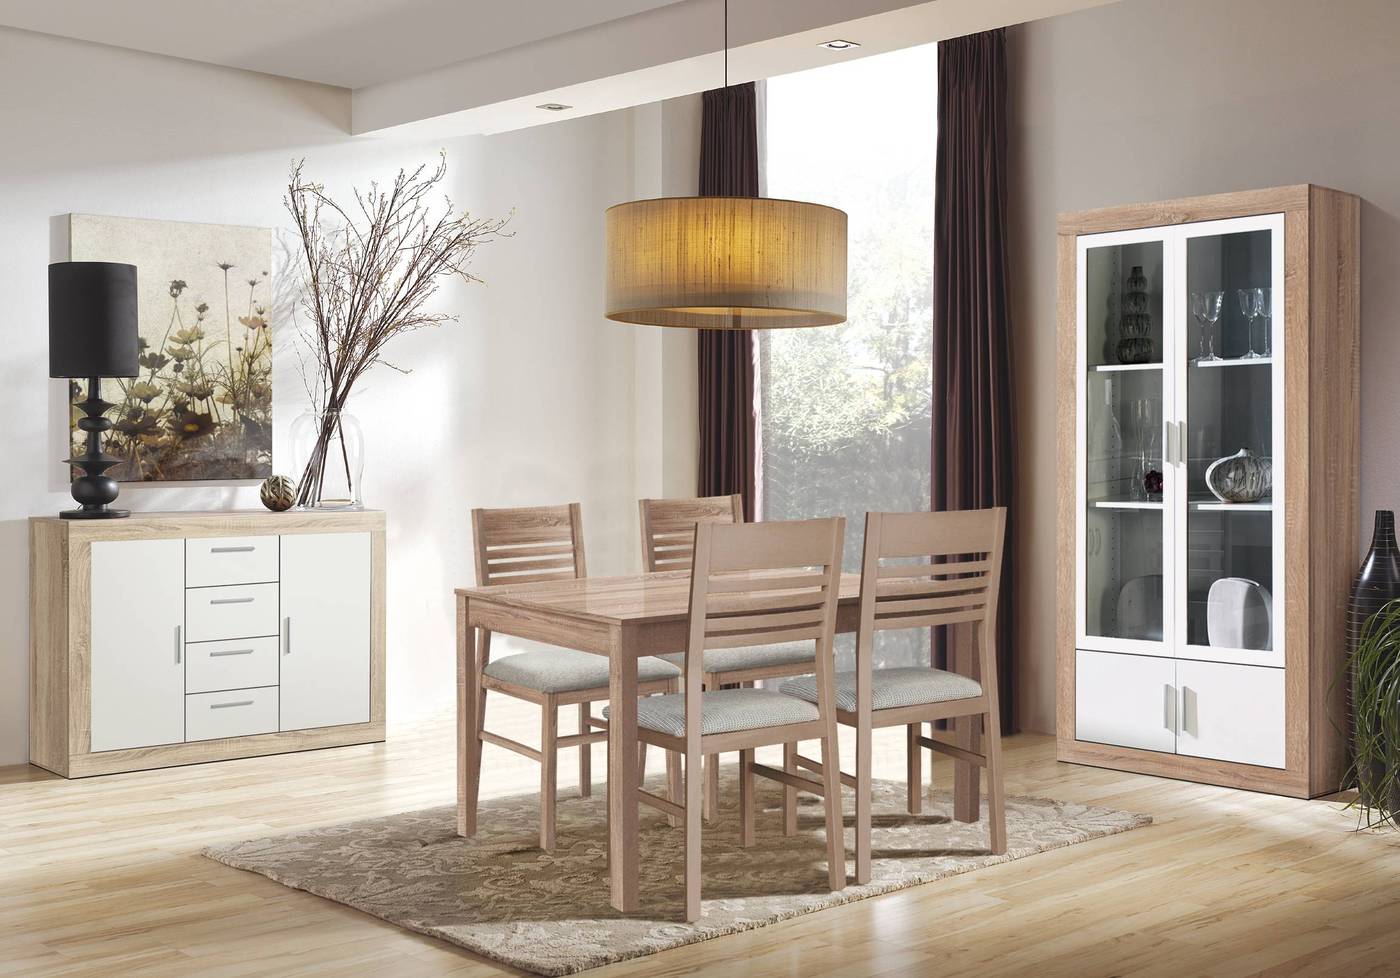 Vitrina para salón/comedor, color roble claro combinado con blanco   Muebles de comedor modernos, Diseño de vitrina, Muebles salon modernos